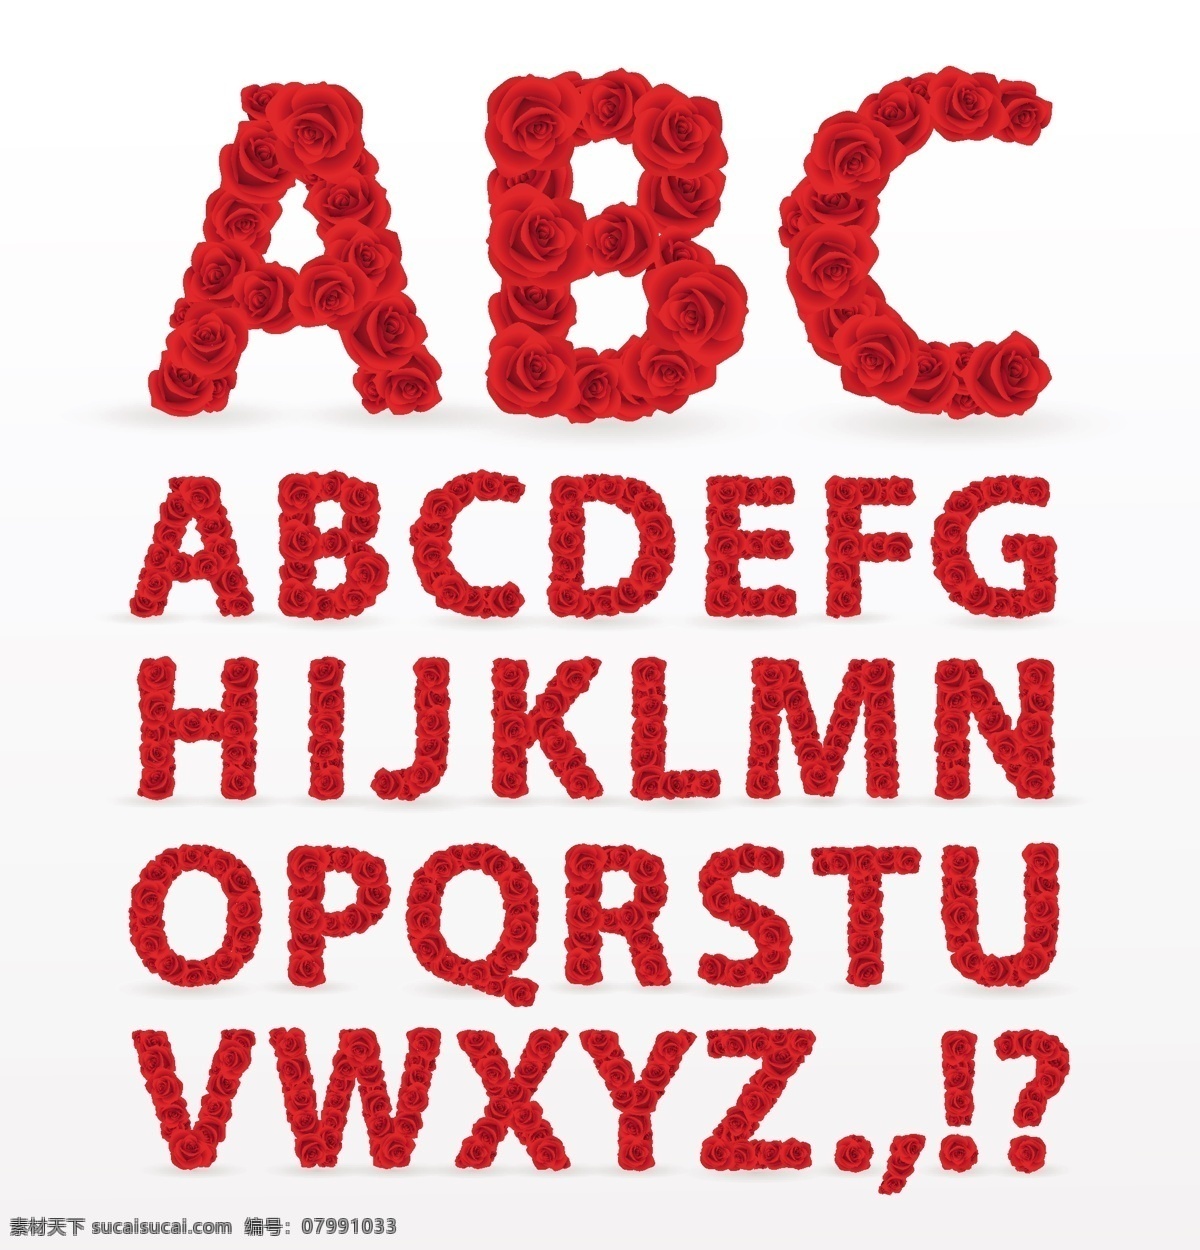 大写 玫瑰 字母 符号 艺术字 字体设计 玫瑰字体 大写字母 字体 设计素材 矢量图